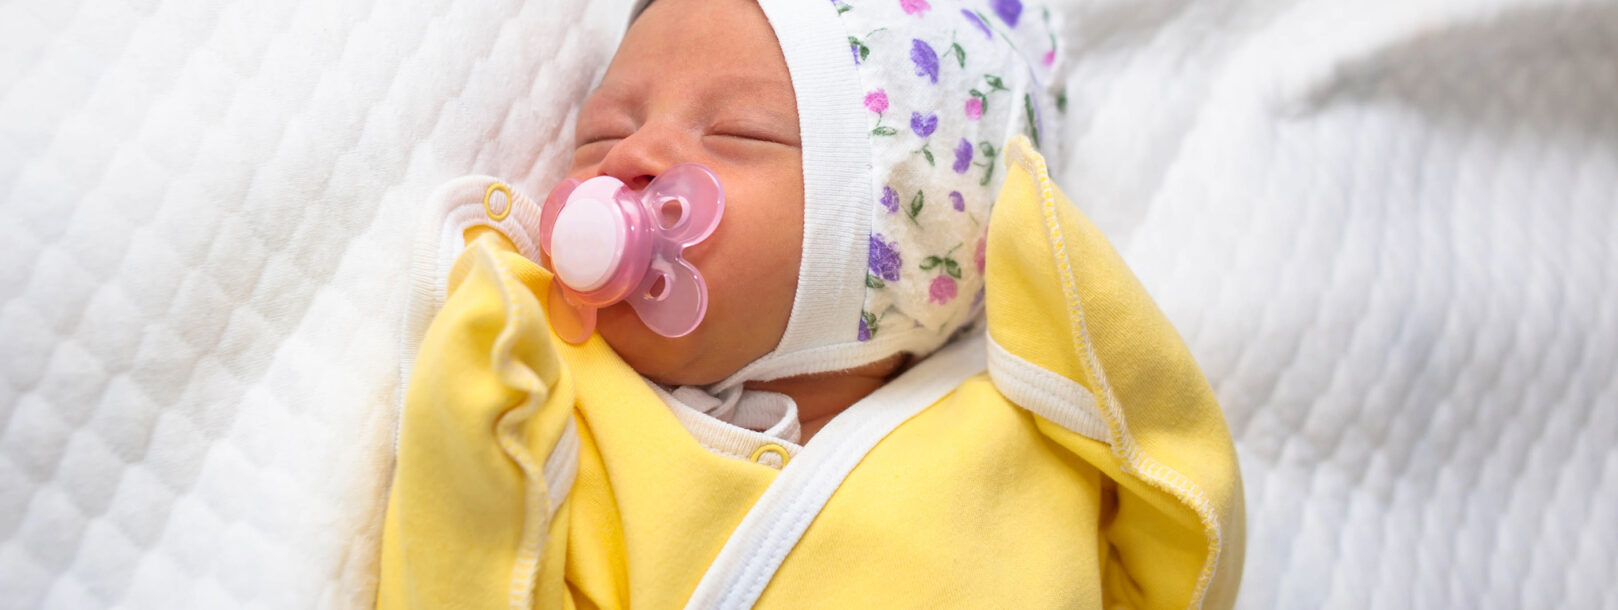 Baby har feber – hvornår skal man ringe til lægen?